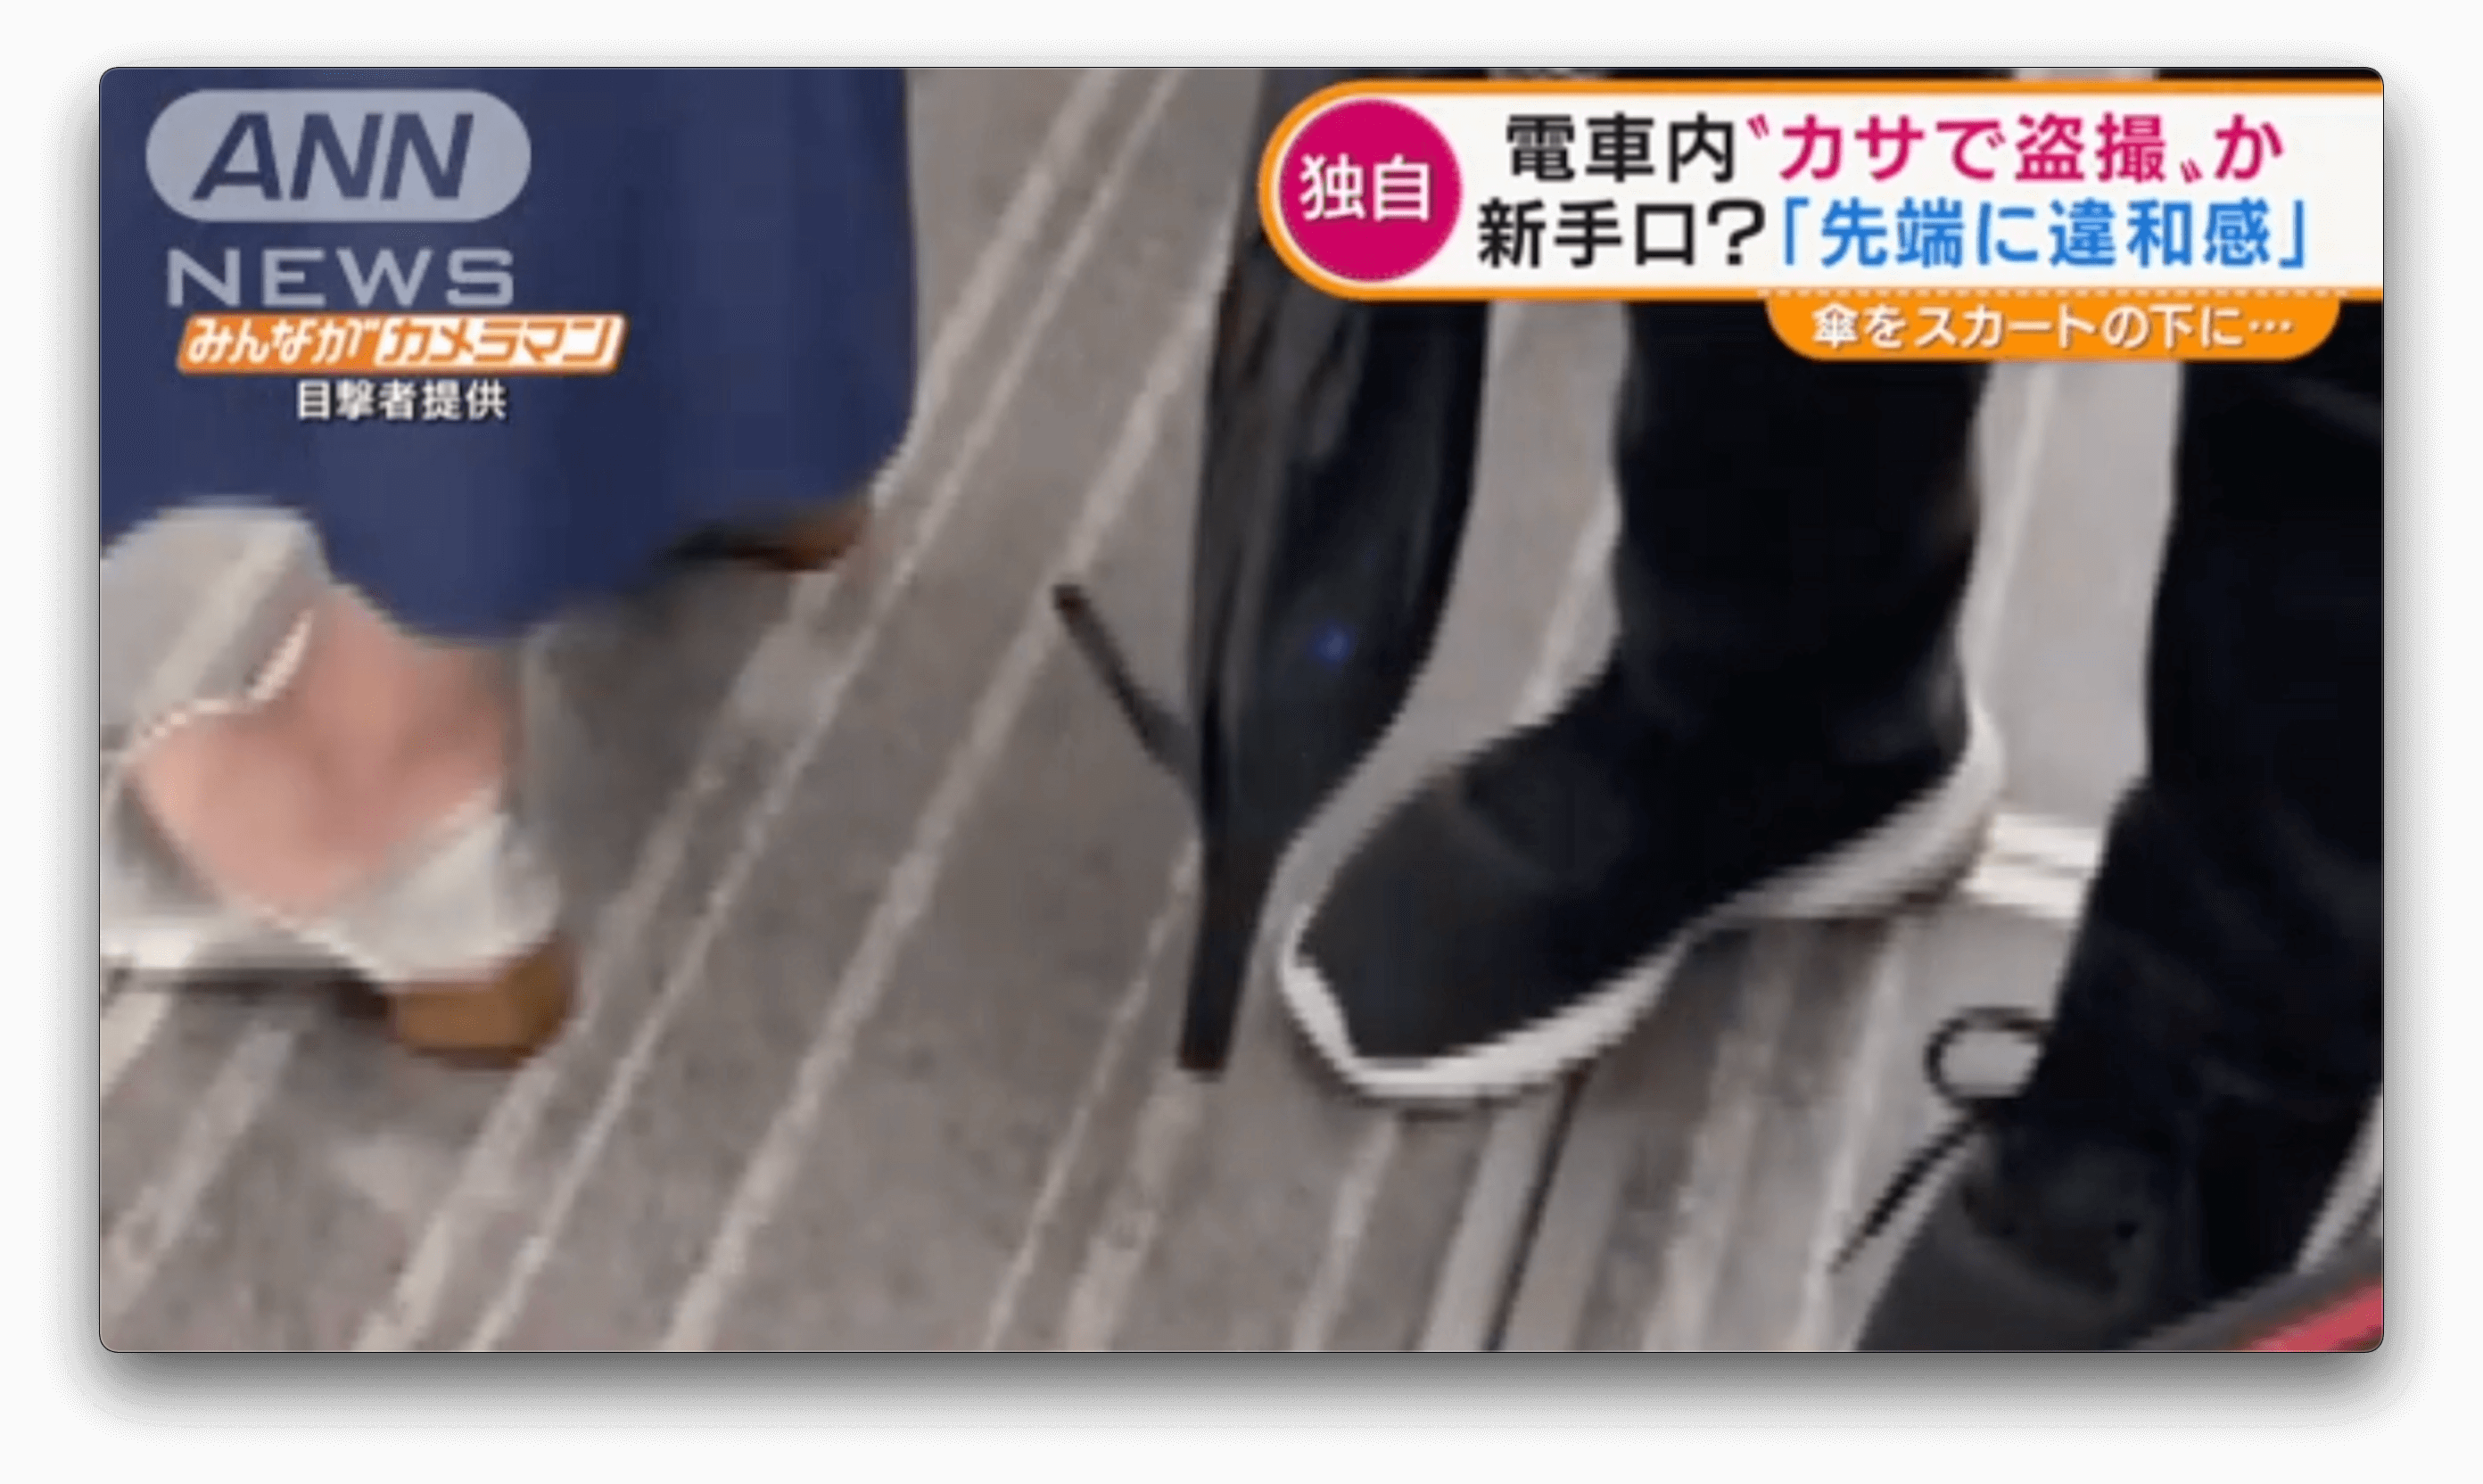 Tarado usa guarda-chuva para espiar japonesa no trem